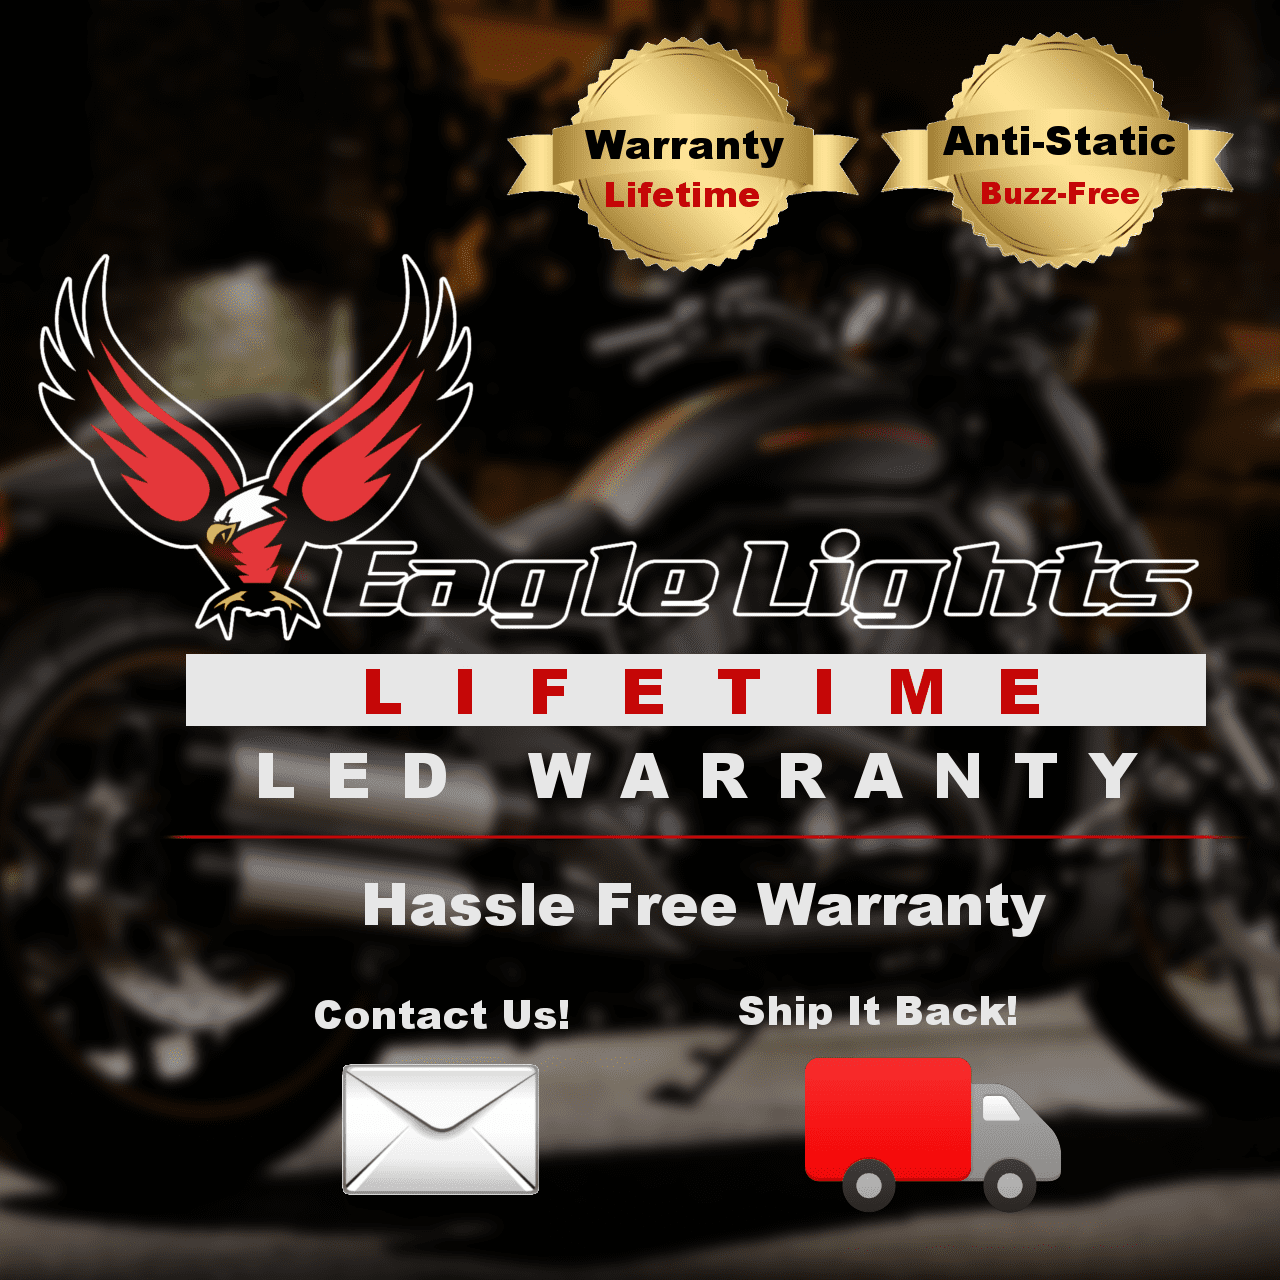 3 ¼” LED Front Turn Signals - Eagle Lights 8748TS 3 1/4" Flat Style LED Front Turn Signals For Harleys - Double Pack